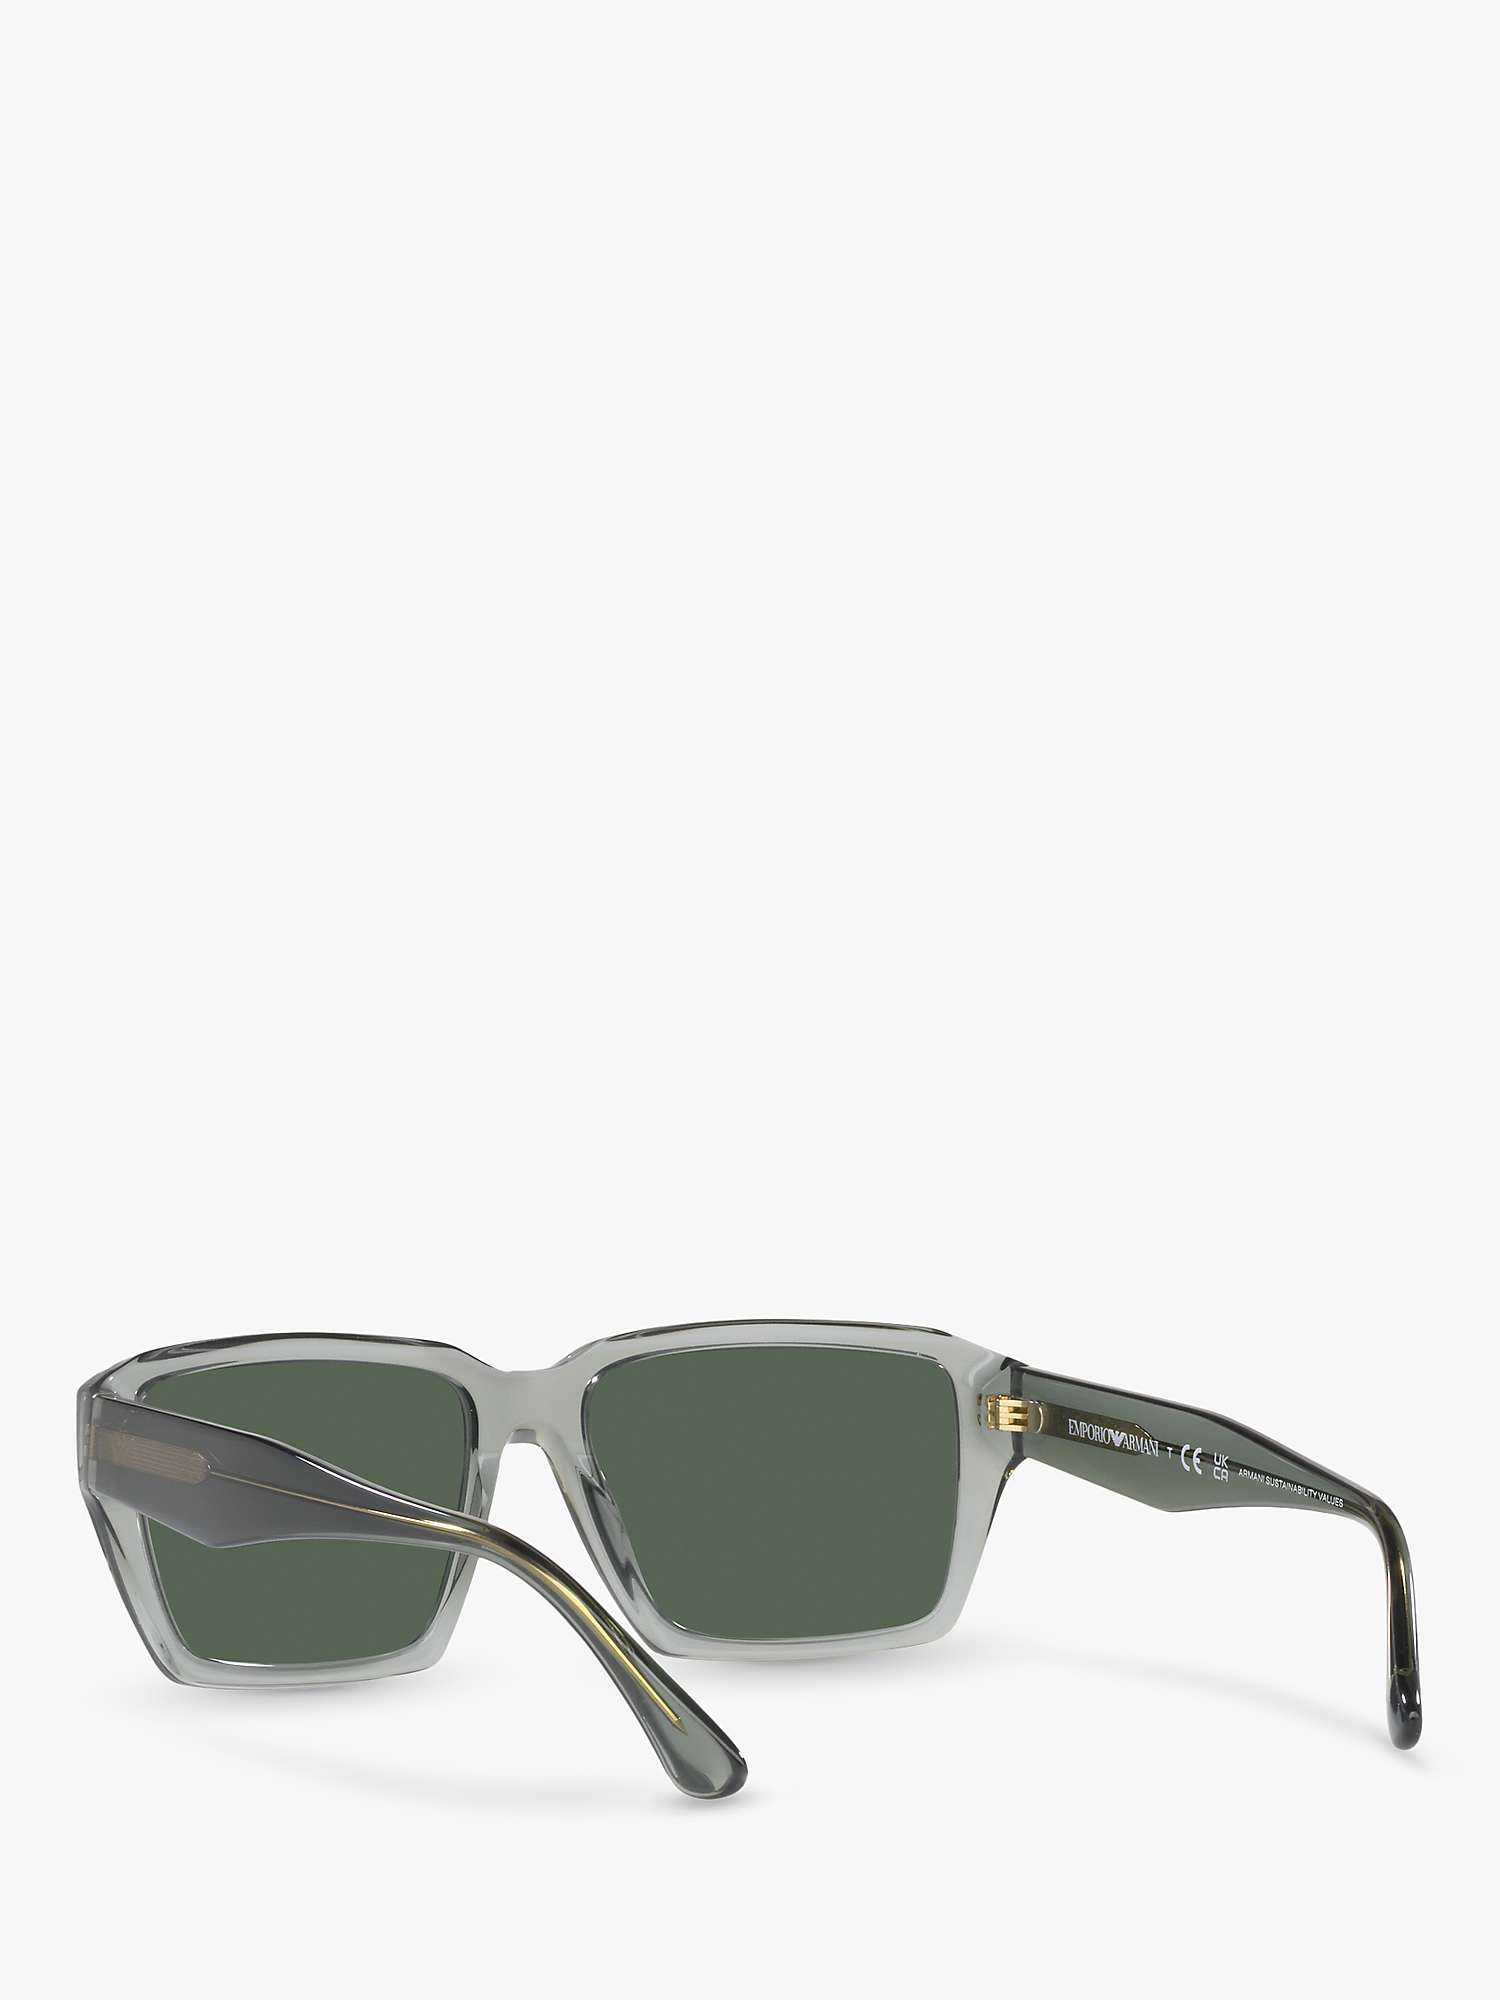 Buy Emporio Armani EA4186 Men's Rectangular Sunglasses Online at johnlewis.com